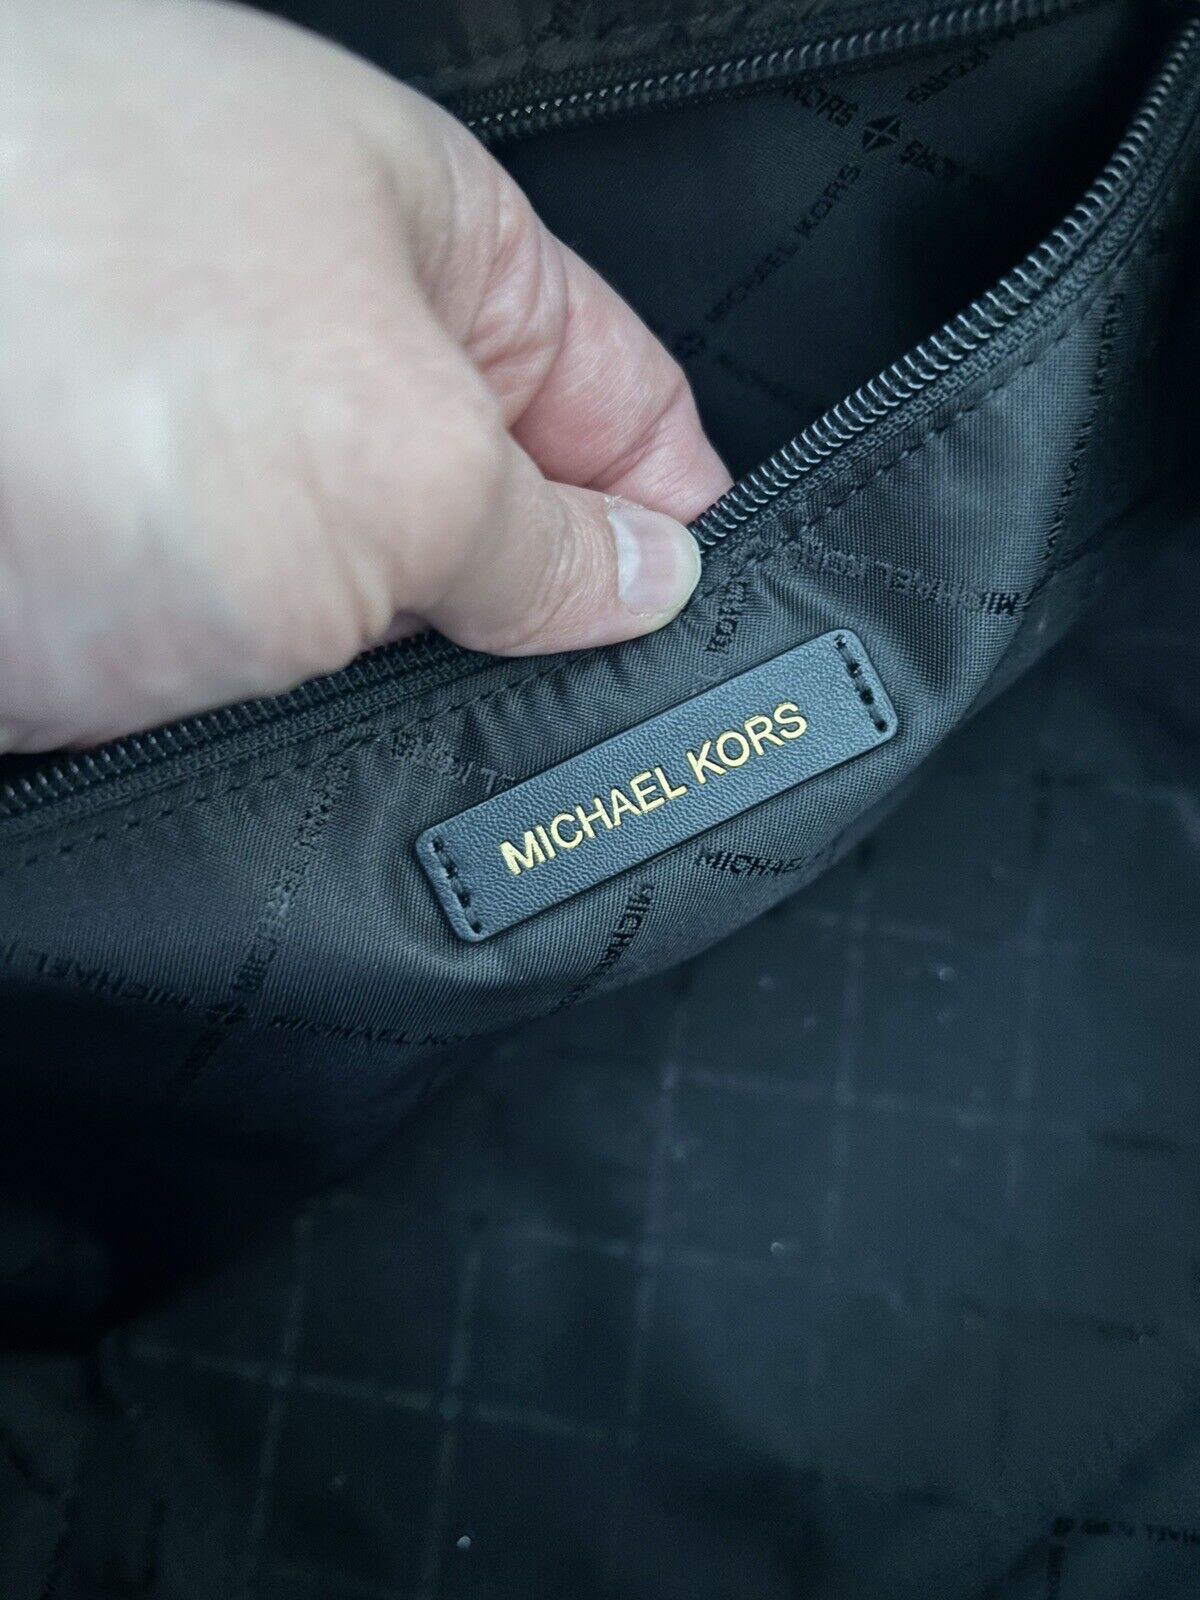 michael kors purse used large leather handbag - image 4